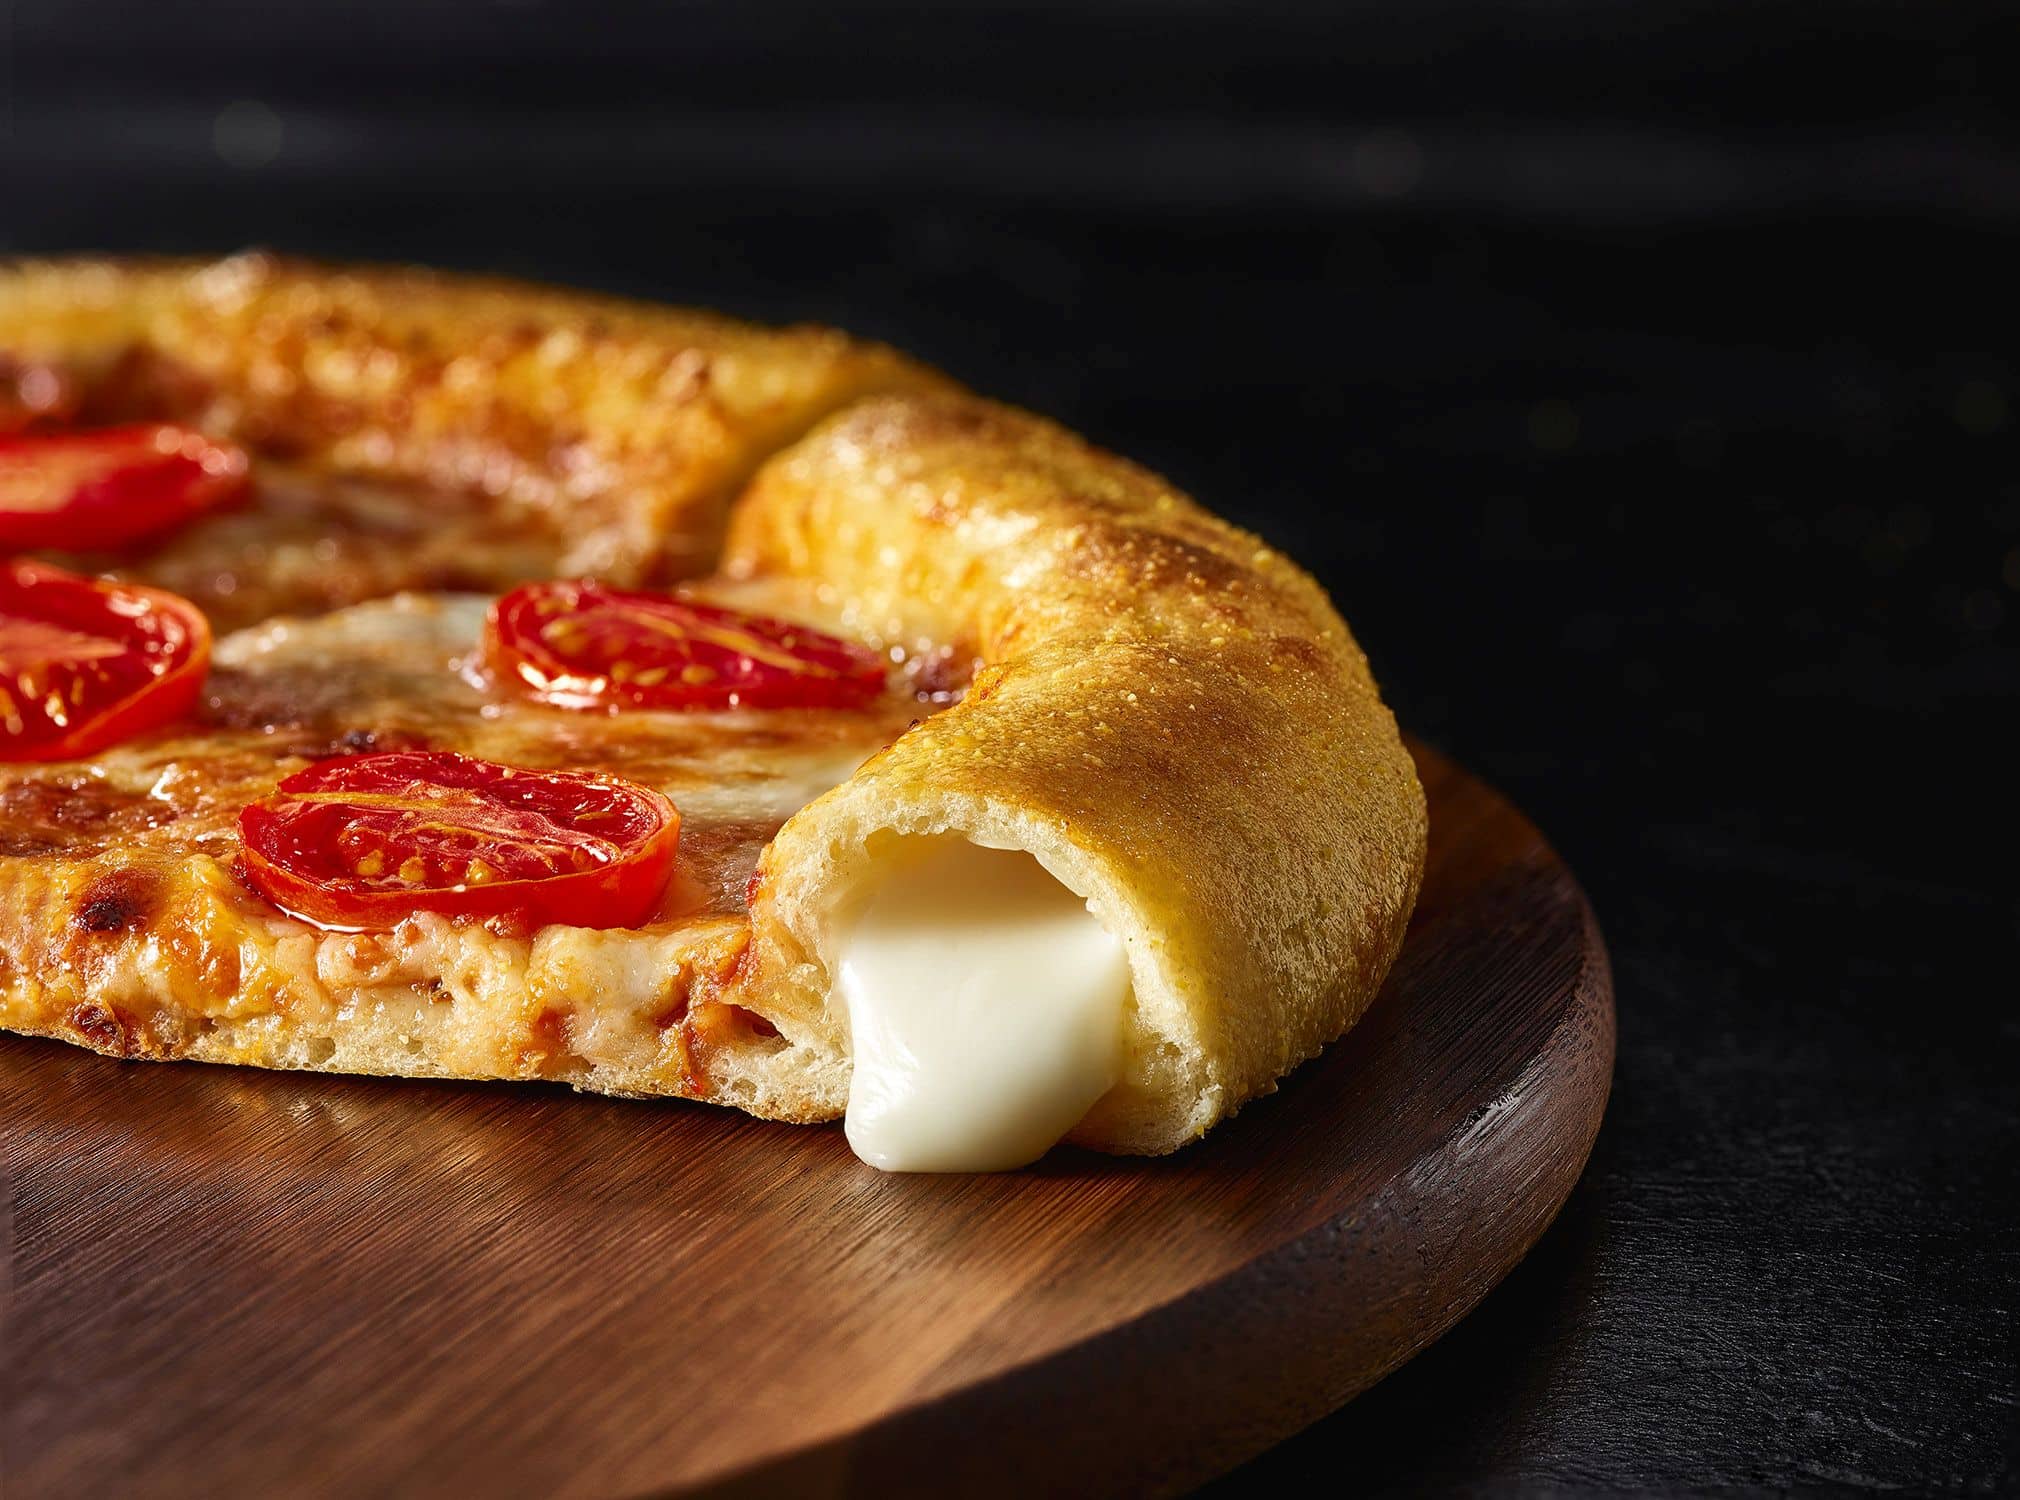 פיצה משפחתית המציעה מילוי גבינות שנועדו לתת ביסים טעימים במיוחד לקראת סוף הפיצה